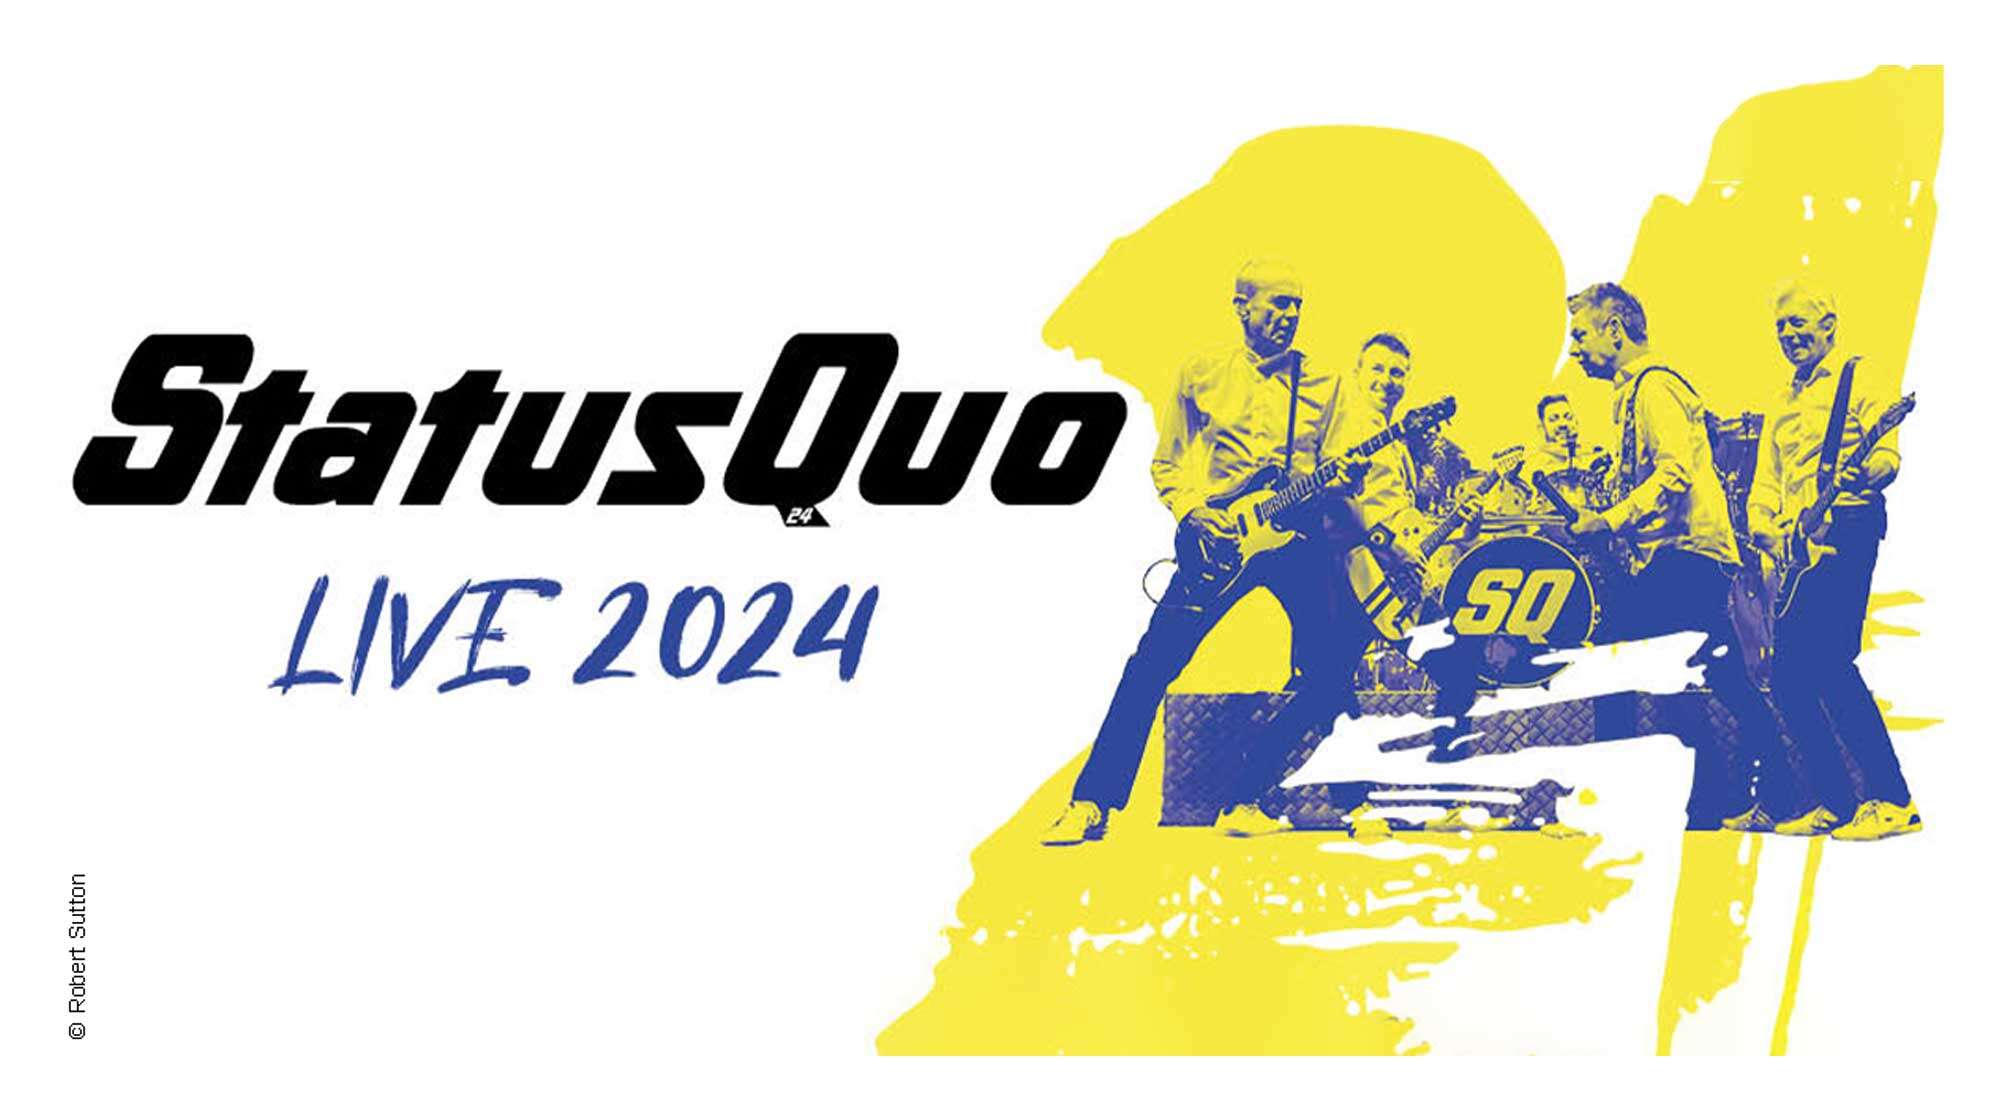 Die Band Status Quo mit ihren Instrumenten und der Schriftzug: "Status Quo Live 2024"